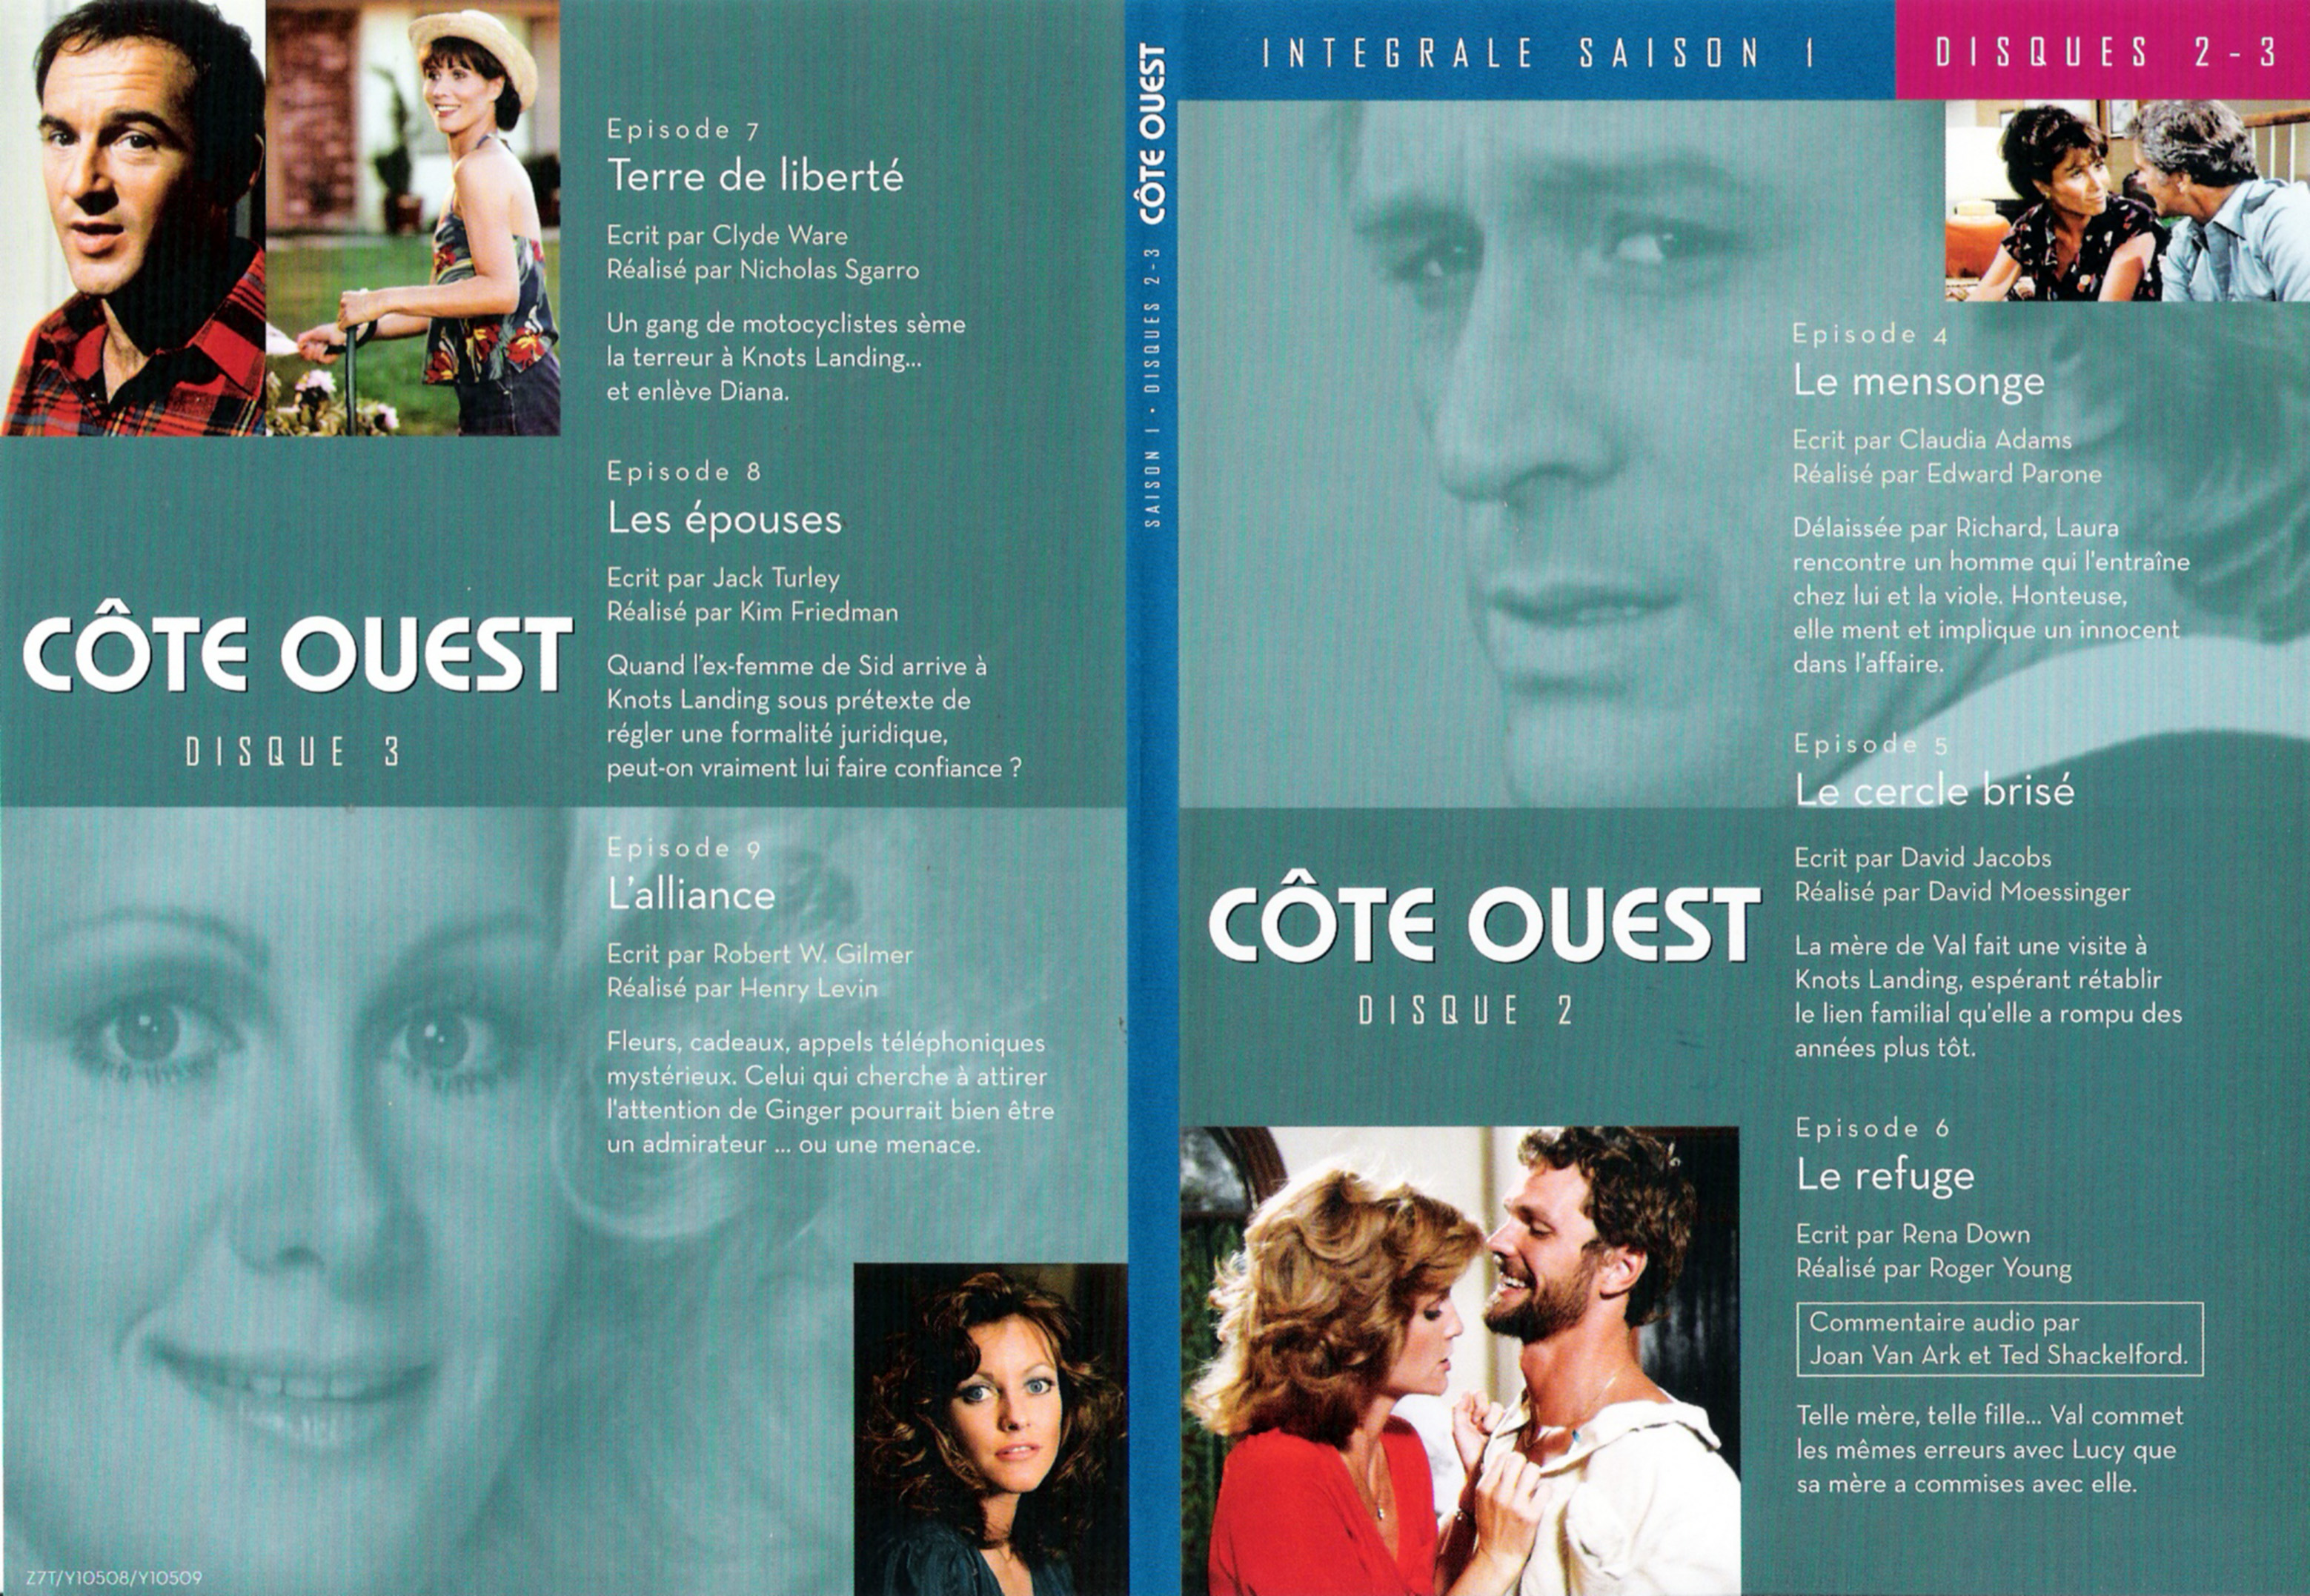 Jaquette DVD Cte Ouest Saison 1 DVD 2 & 3